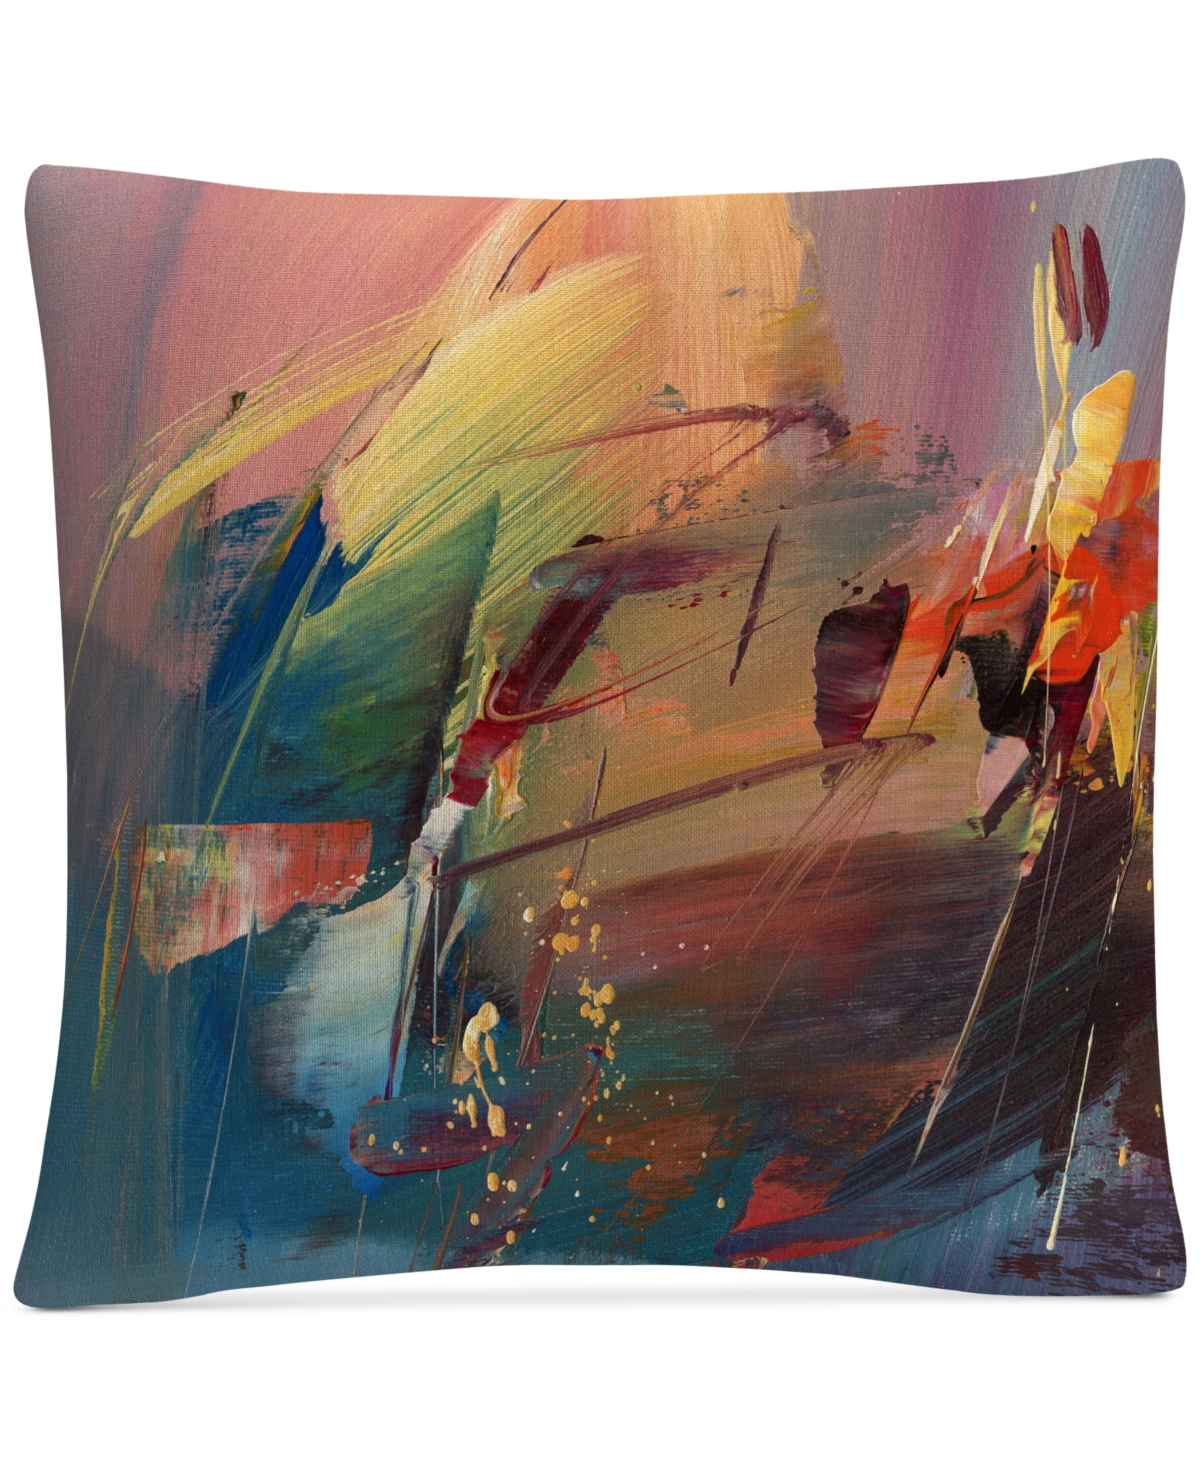 Ricardo Tapia Garden Decorative Pillow, 16 x 16